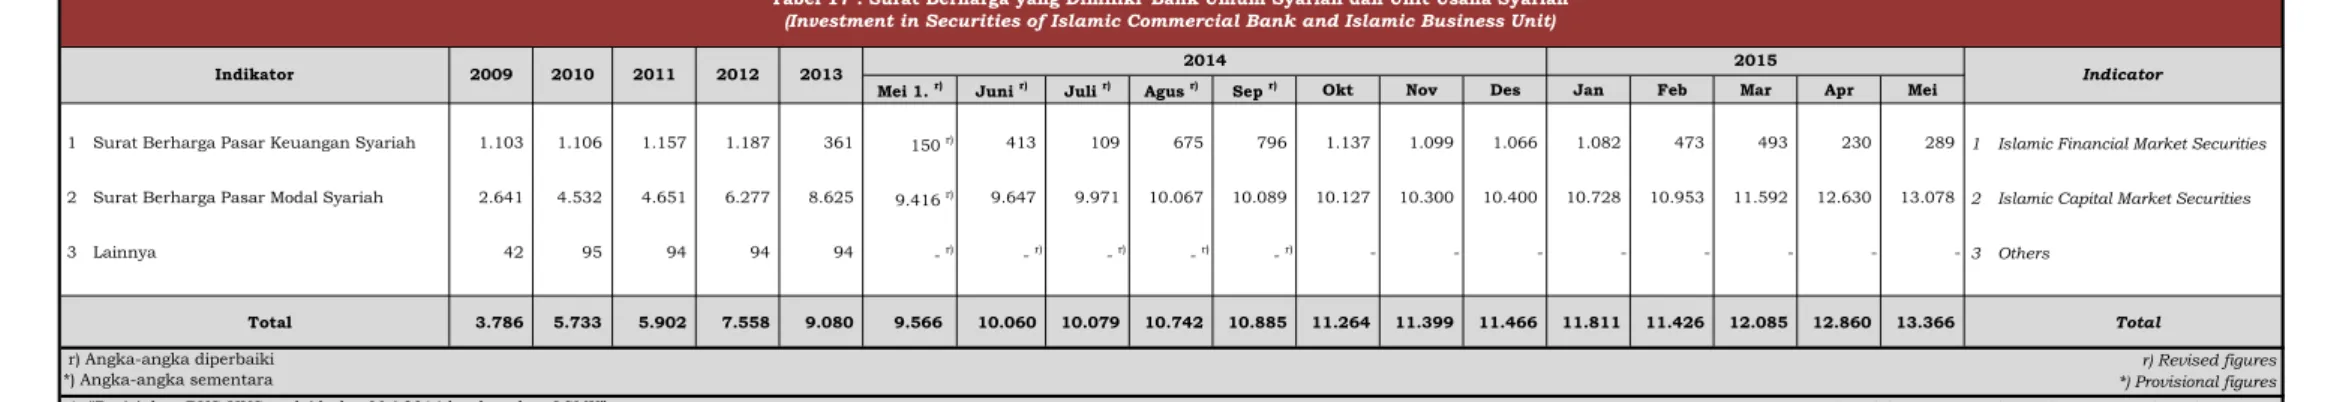 Tabel 17 . Surat Berharga yang Dimiliki  Bank Umum Syariah dan Unit Usaha Syariah  (Investment in Securities of Islamic Commercial Bank and Islamic Business Unit)